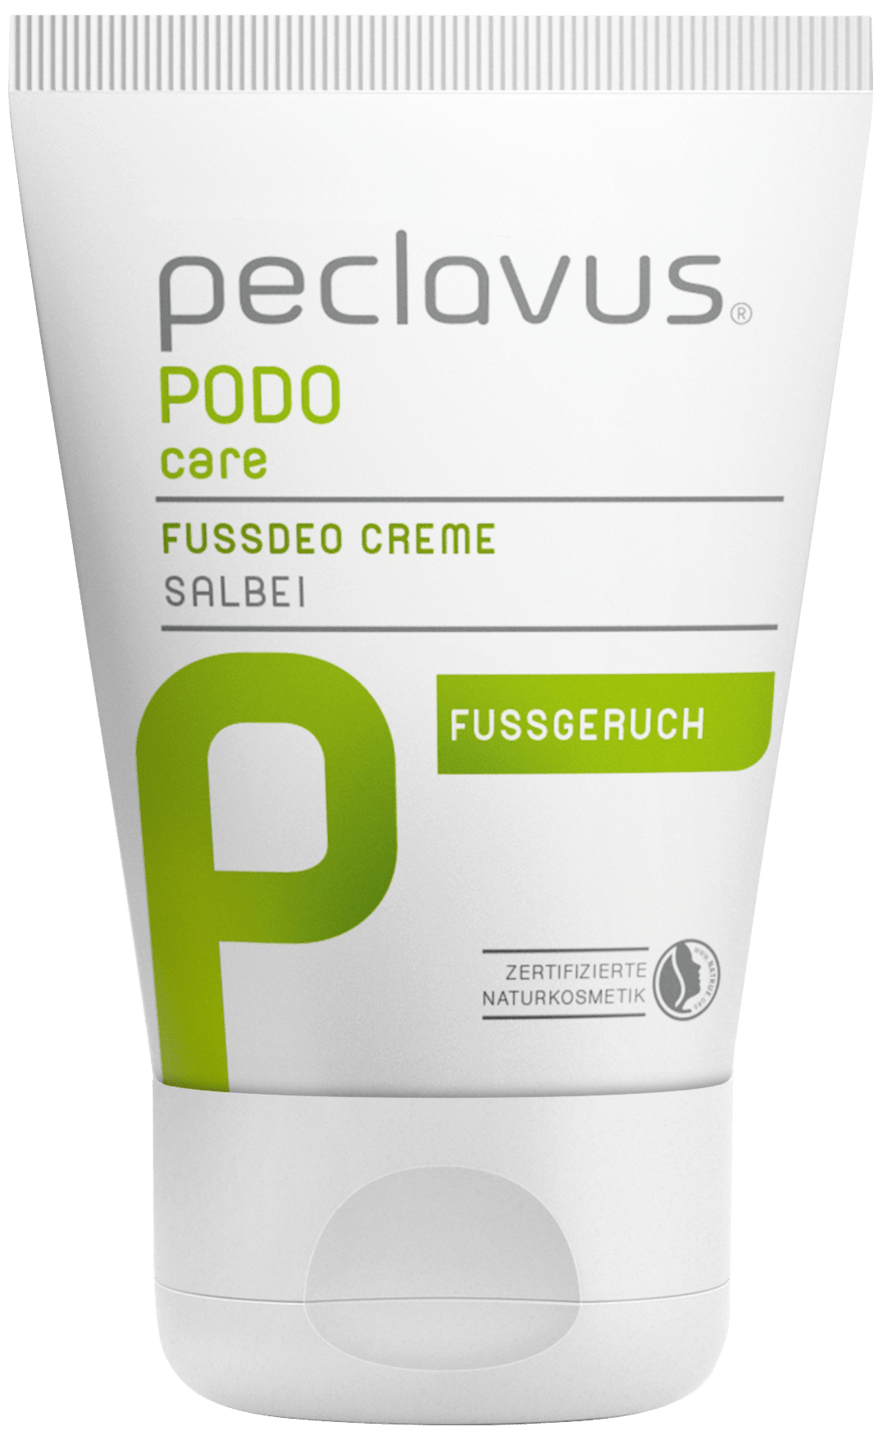 peclavus - Fußdeo Creme, 30 ml